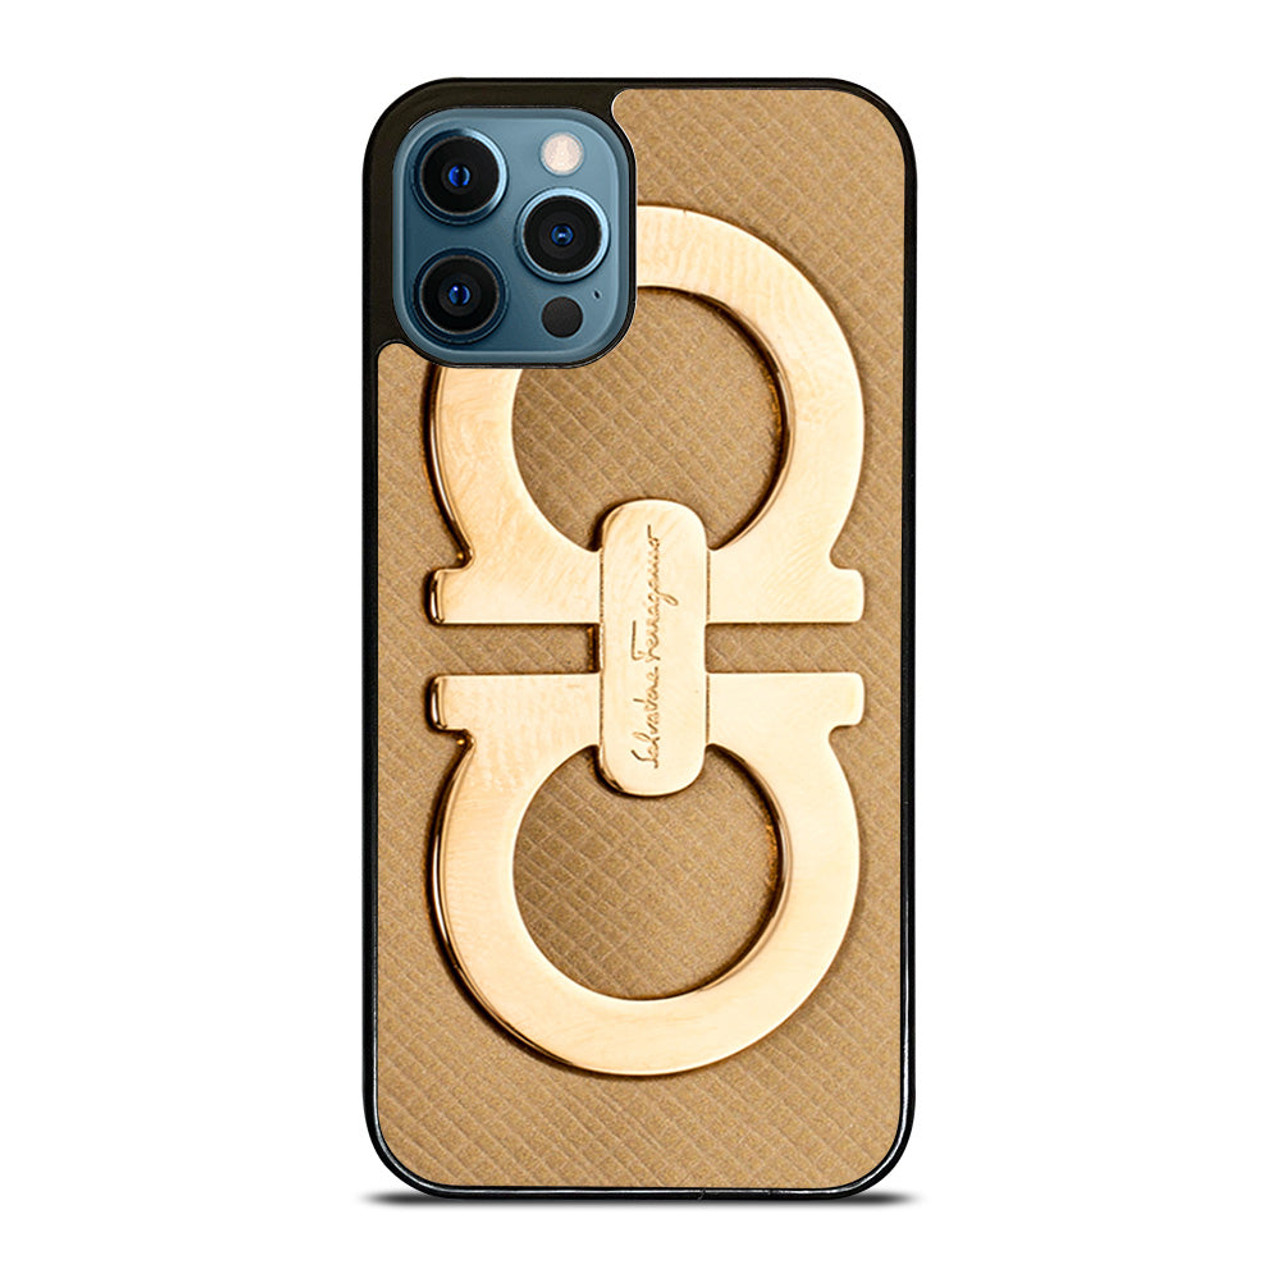 フェラガモ iPhone12 case - iPhone用ケース